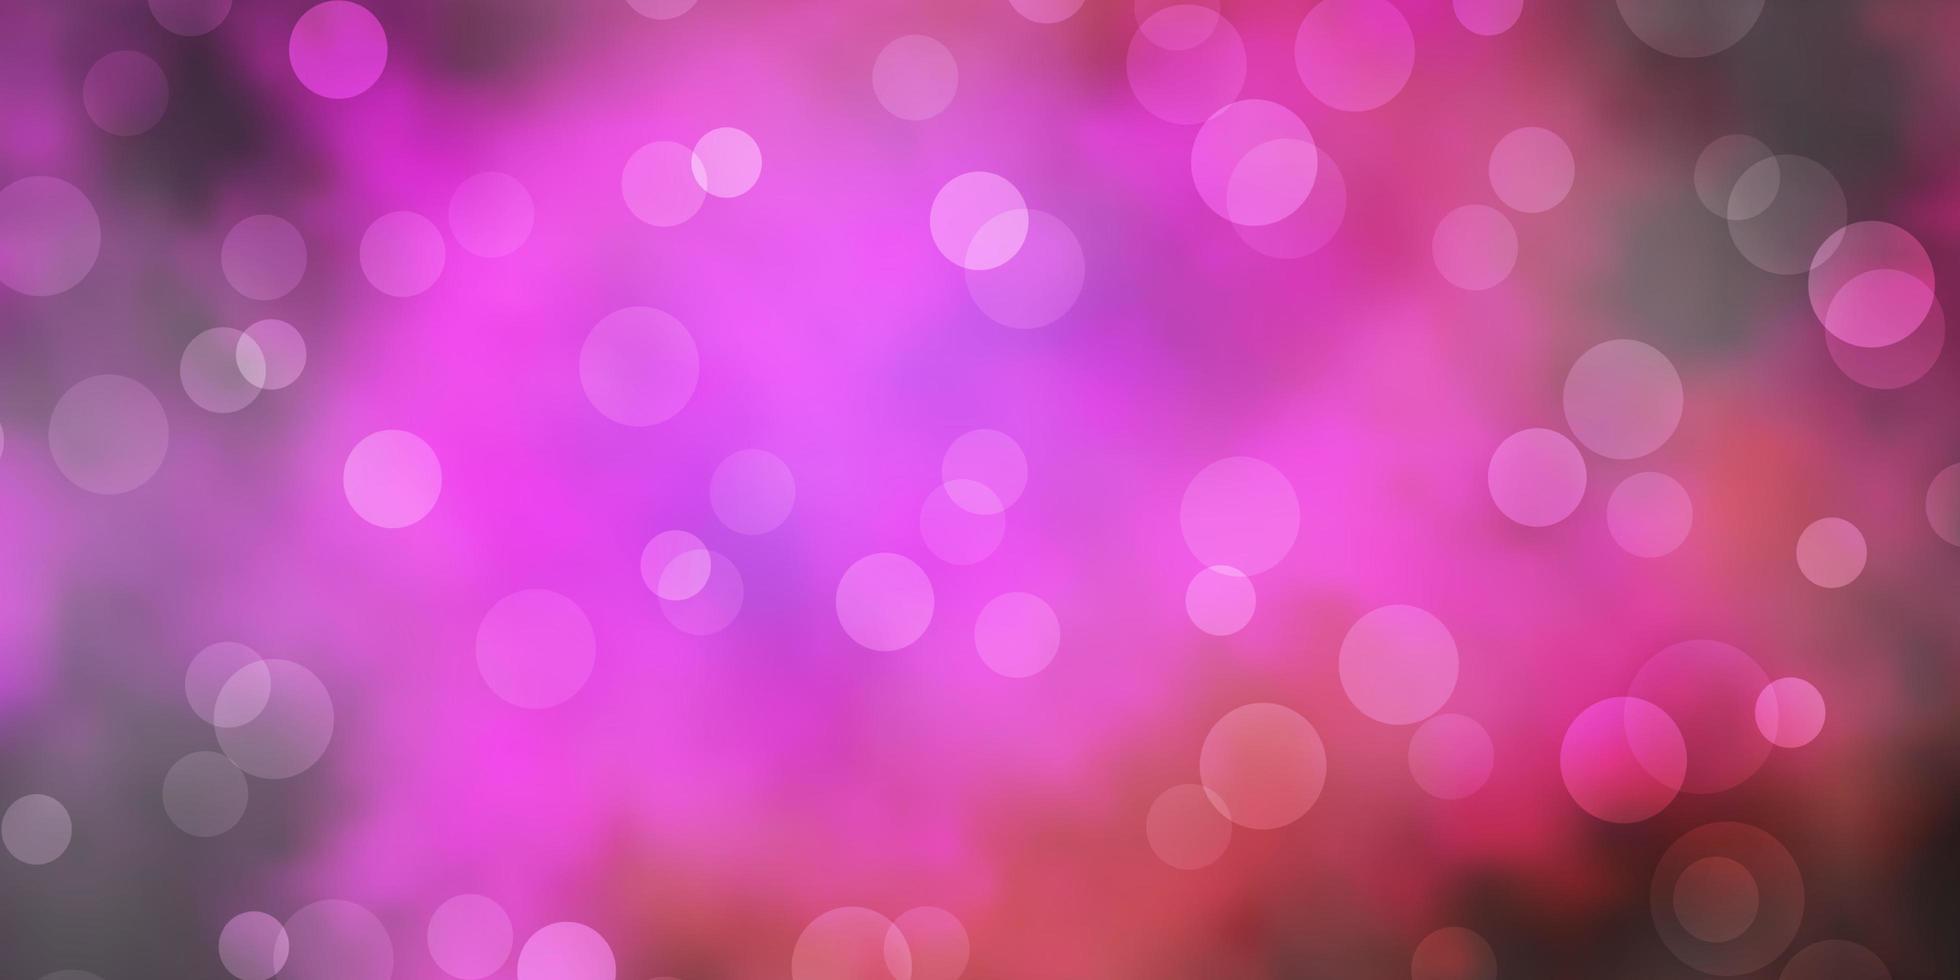 sfondo vettoriale rosa scuro con cerchi